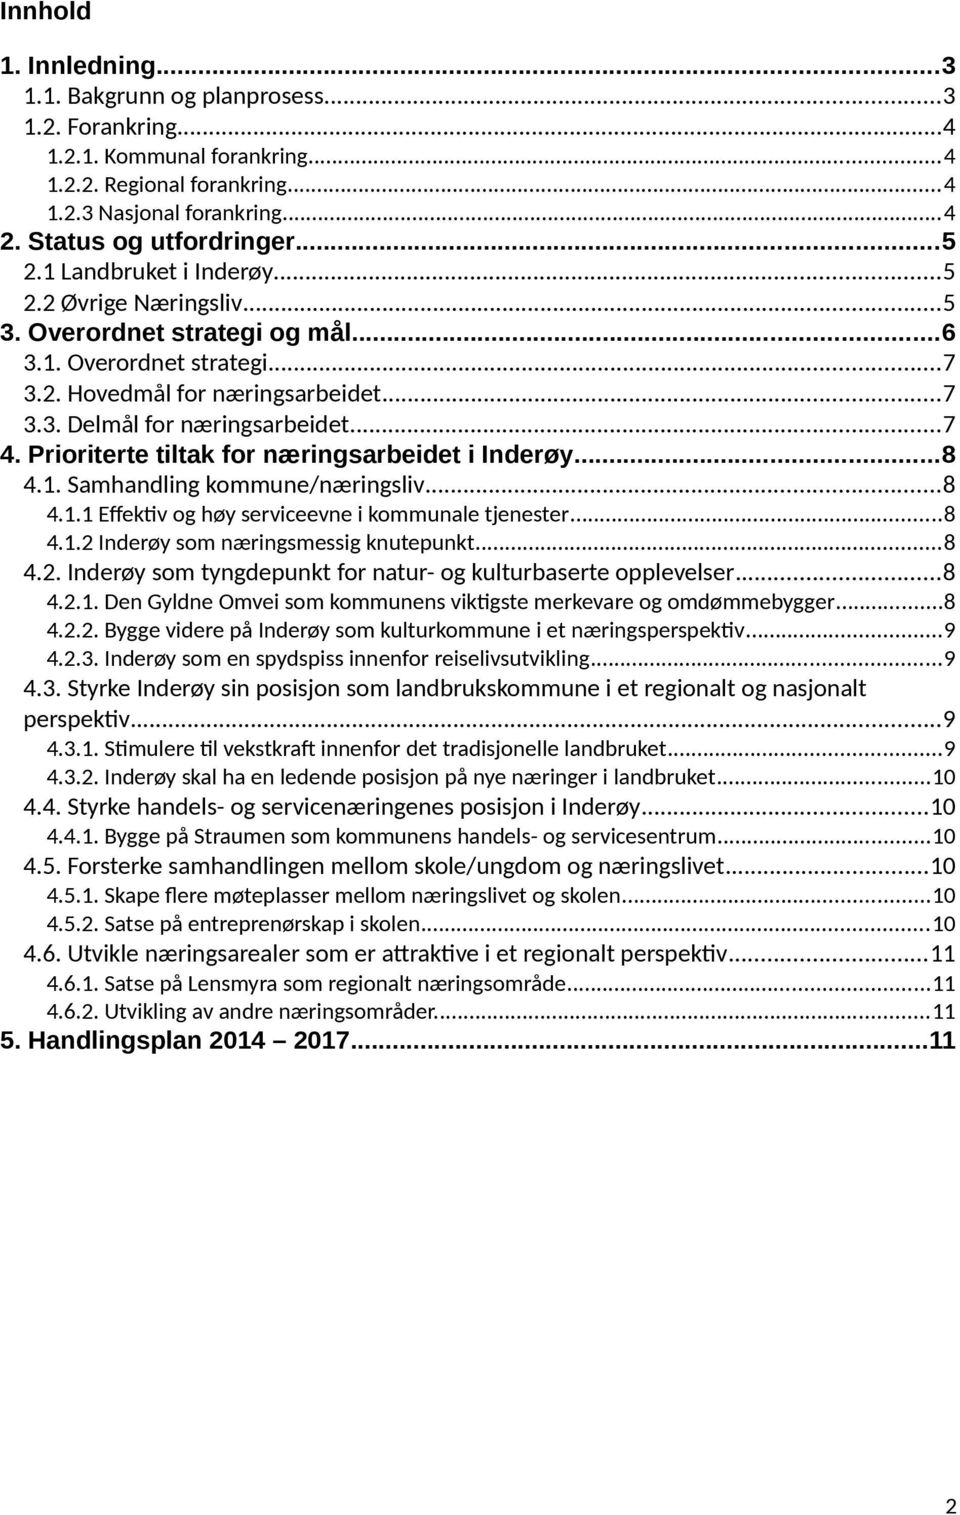 Prioriterte tiltak for næringsarbeidet i Inderøy...8 4.1. Samhandling kommune/næringsliv...8 4.1.1 Effektiv og høy serviceevne i kommunale tjenester...8 4.1.2 